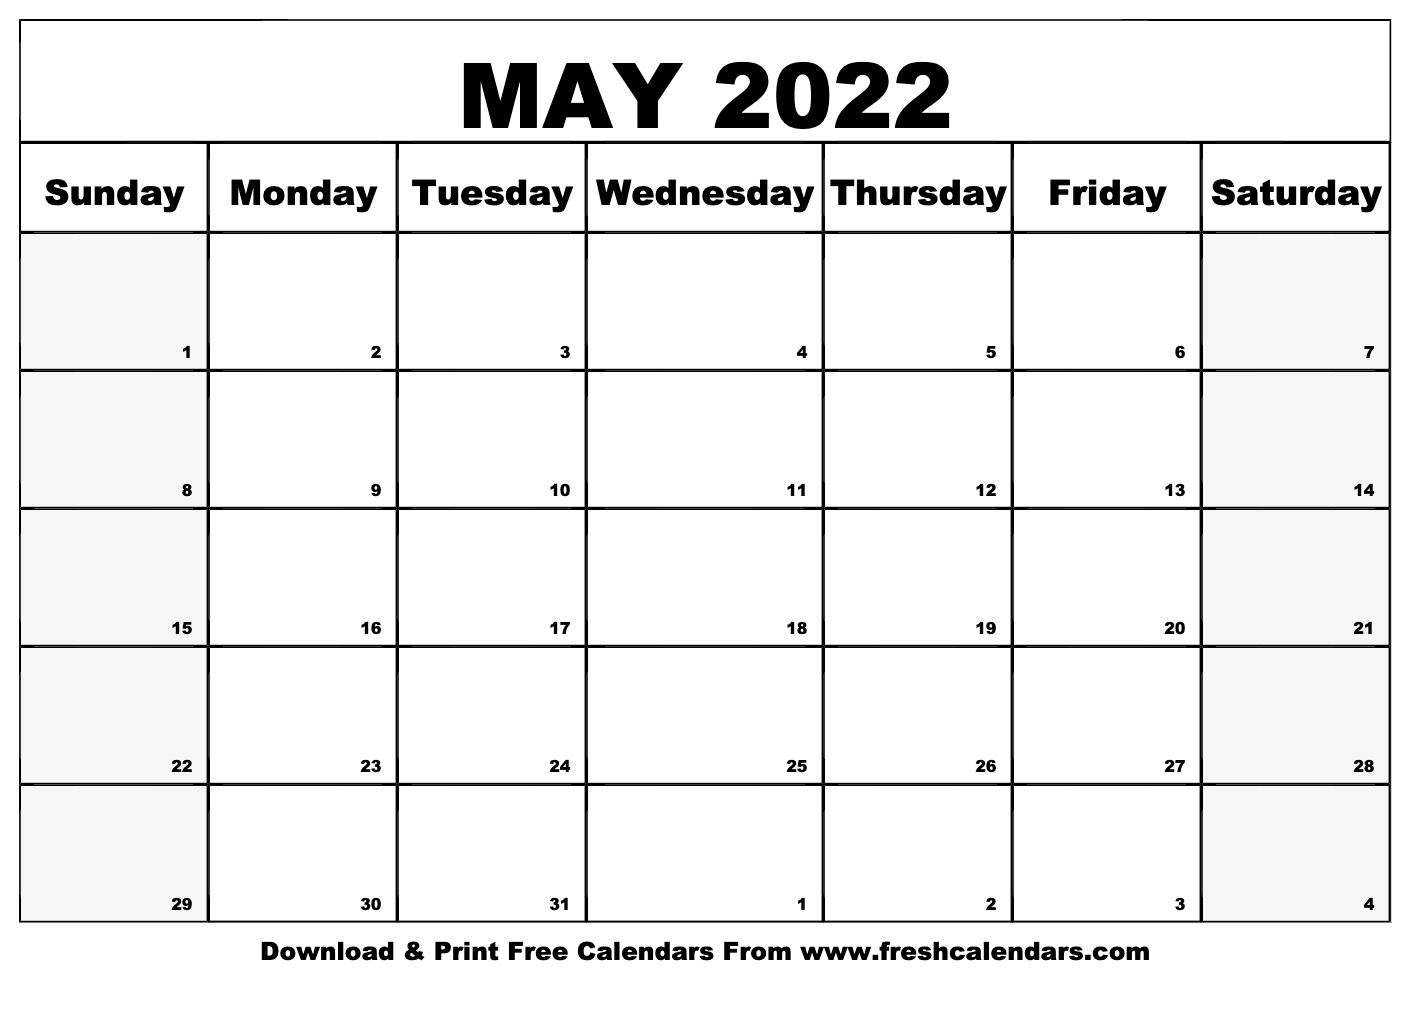 Get Free Calendar May 2022